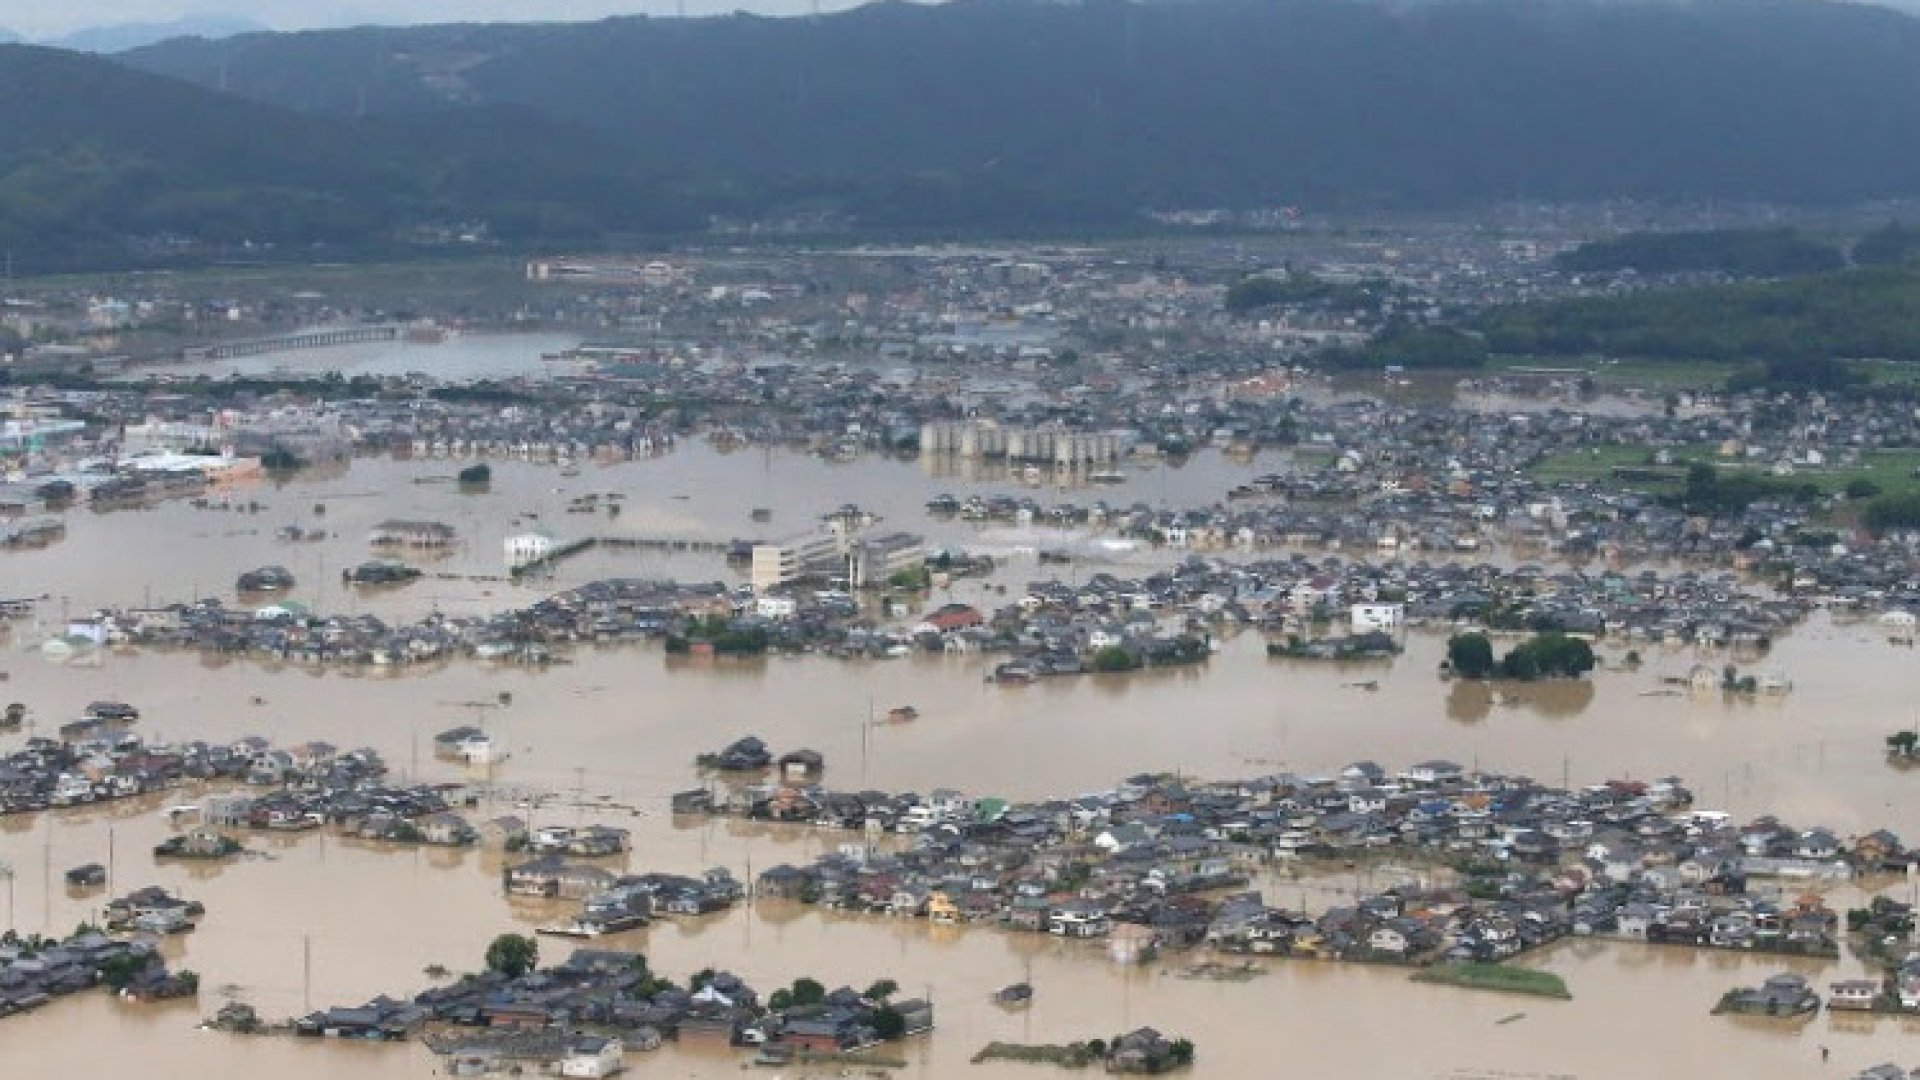  Bilanţul ploilor torenţiale din Brazilia: 79 de morţi şi 56 de dispăruţi